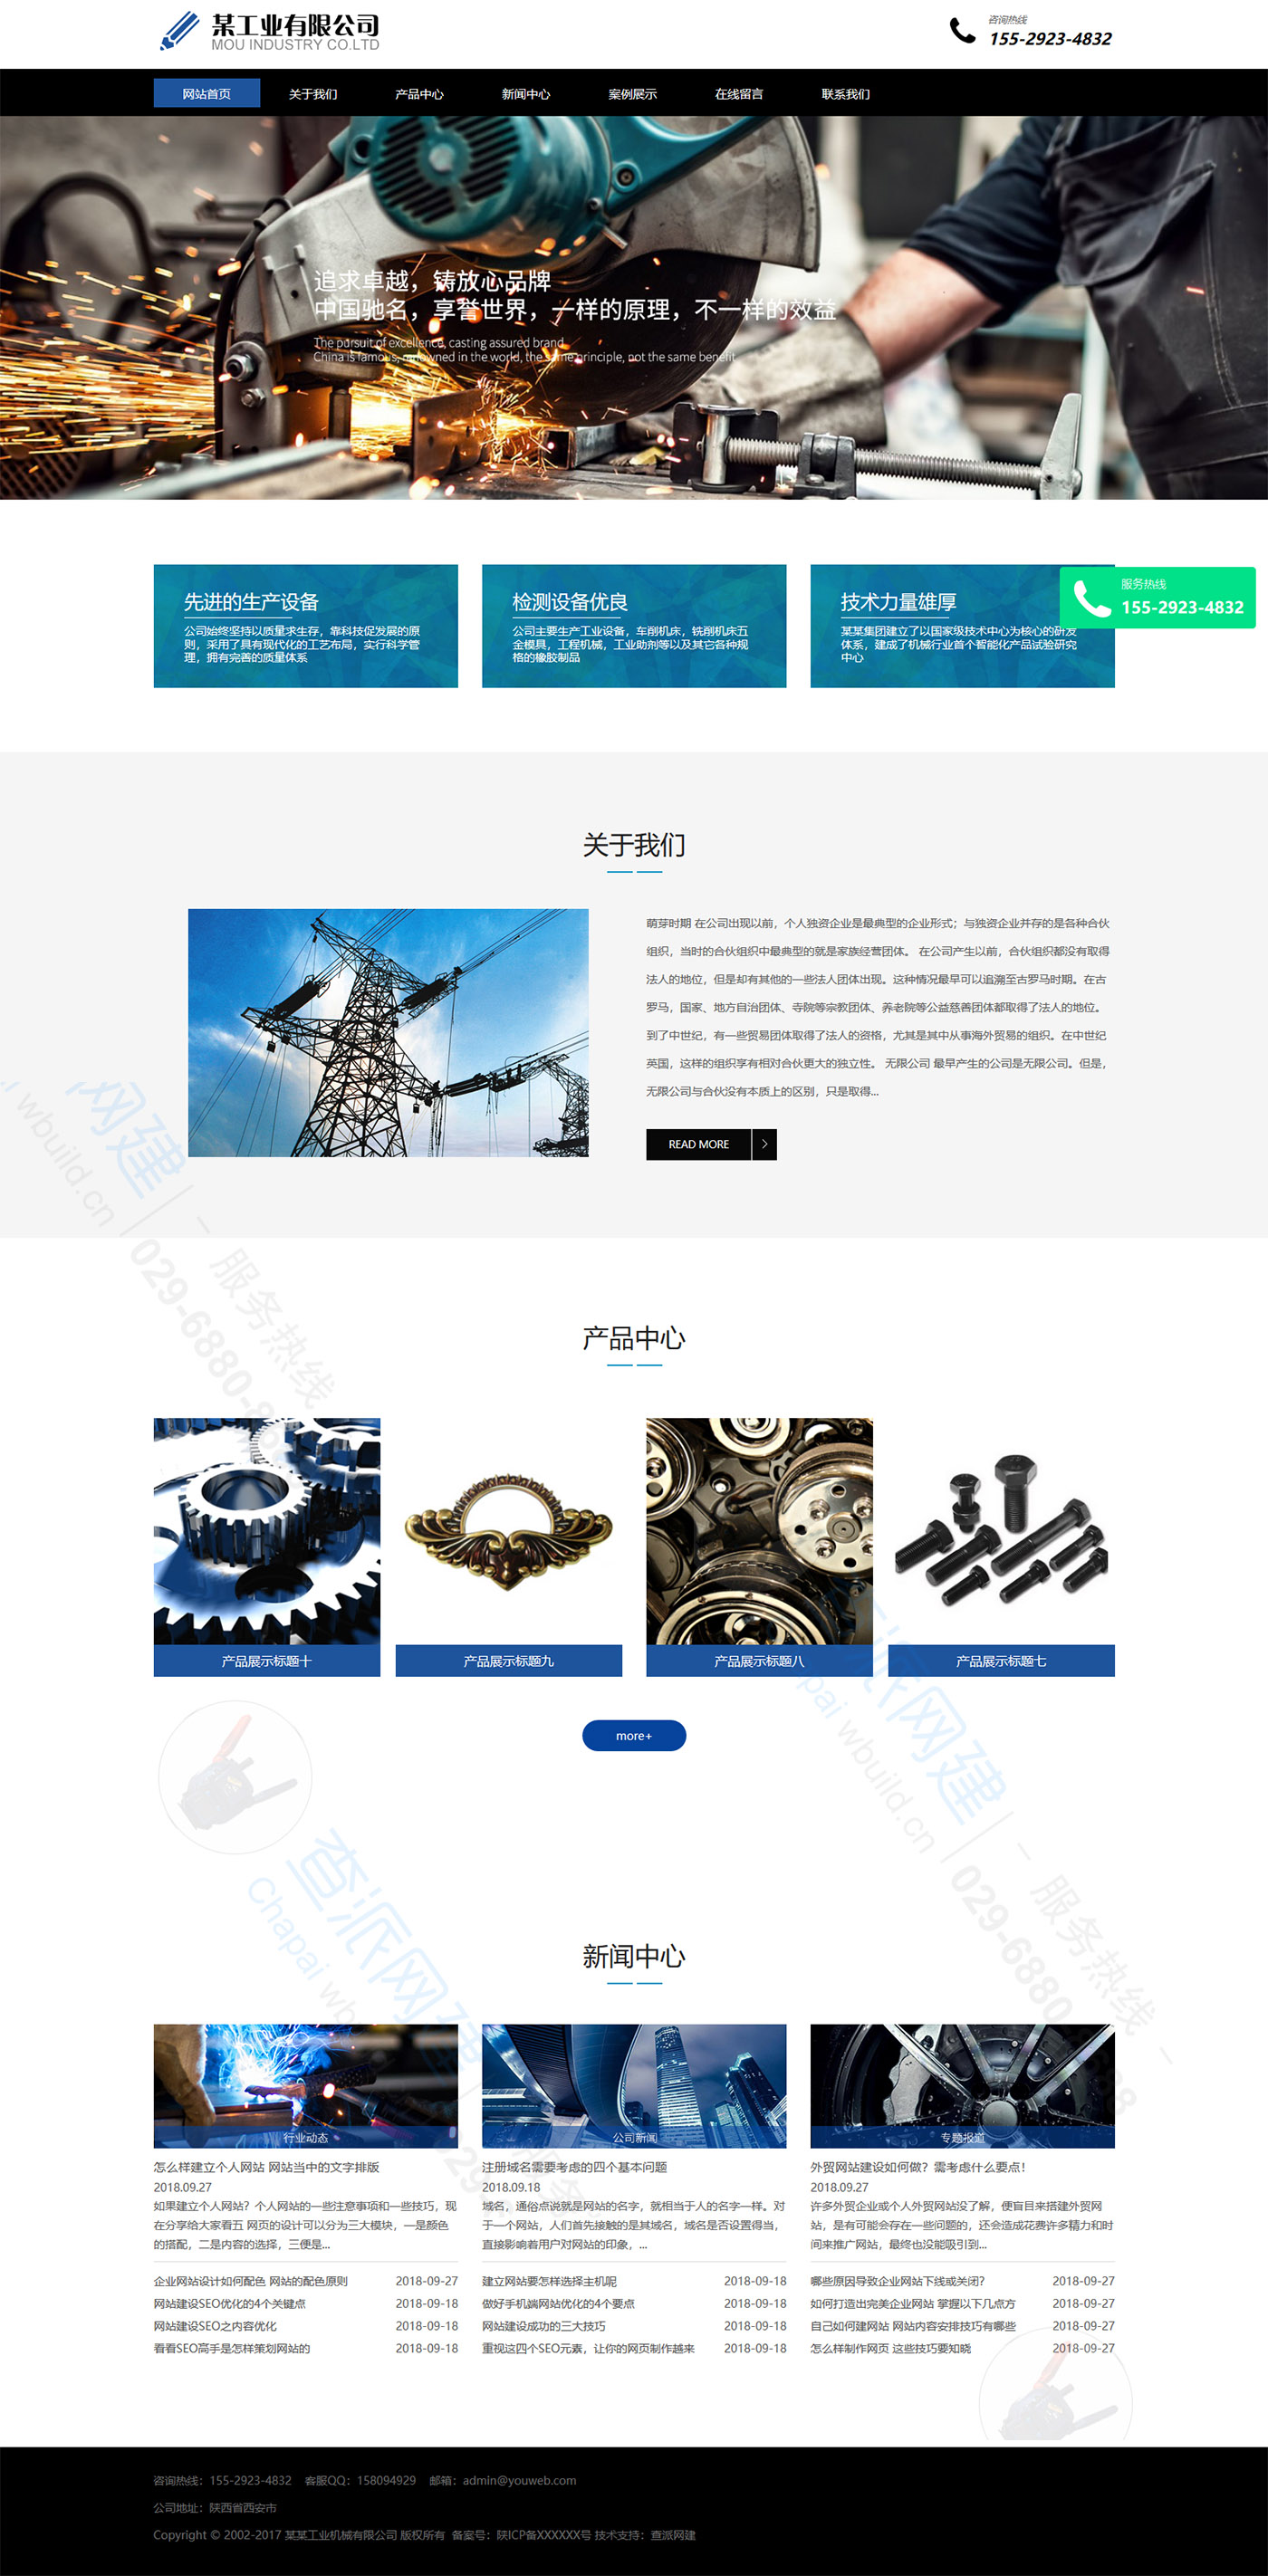 工业设备机械设备类响应式企业网站模板(自适应手机端)